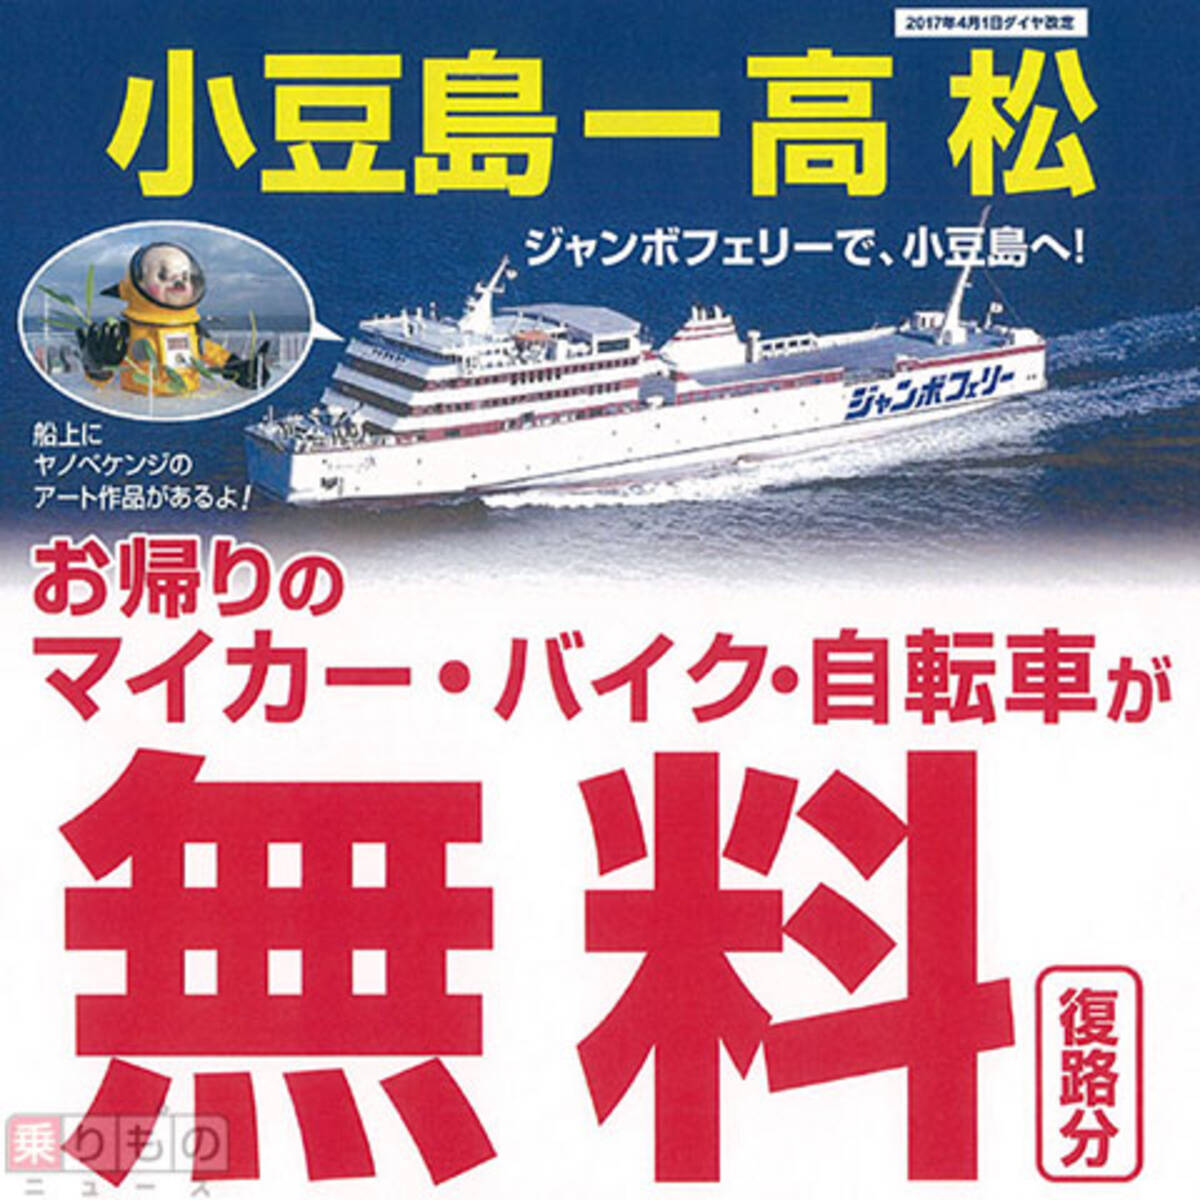 ジャンボフェリー 高松 小豆島航路を車で往復すると復路無料 17年5月3日 エキサイトニュース